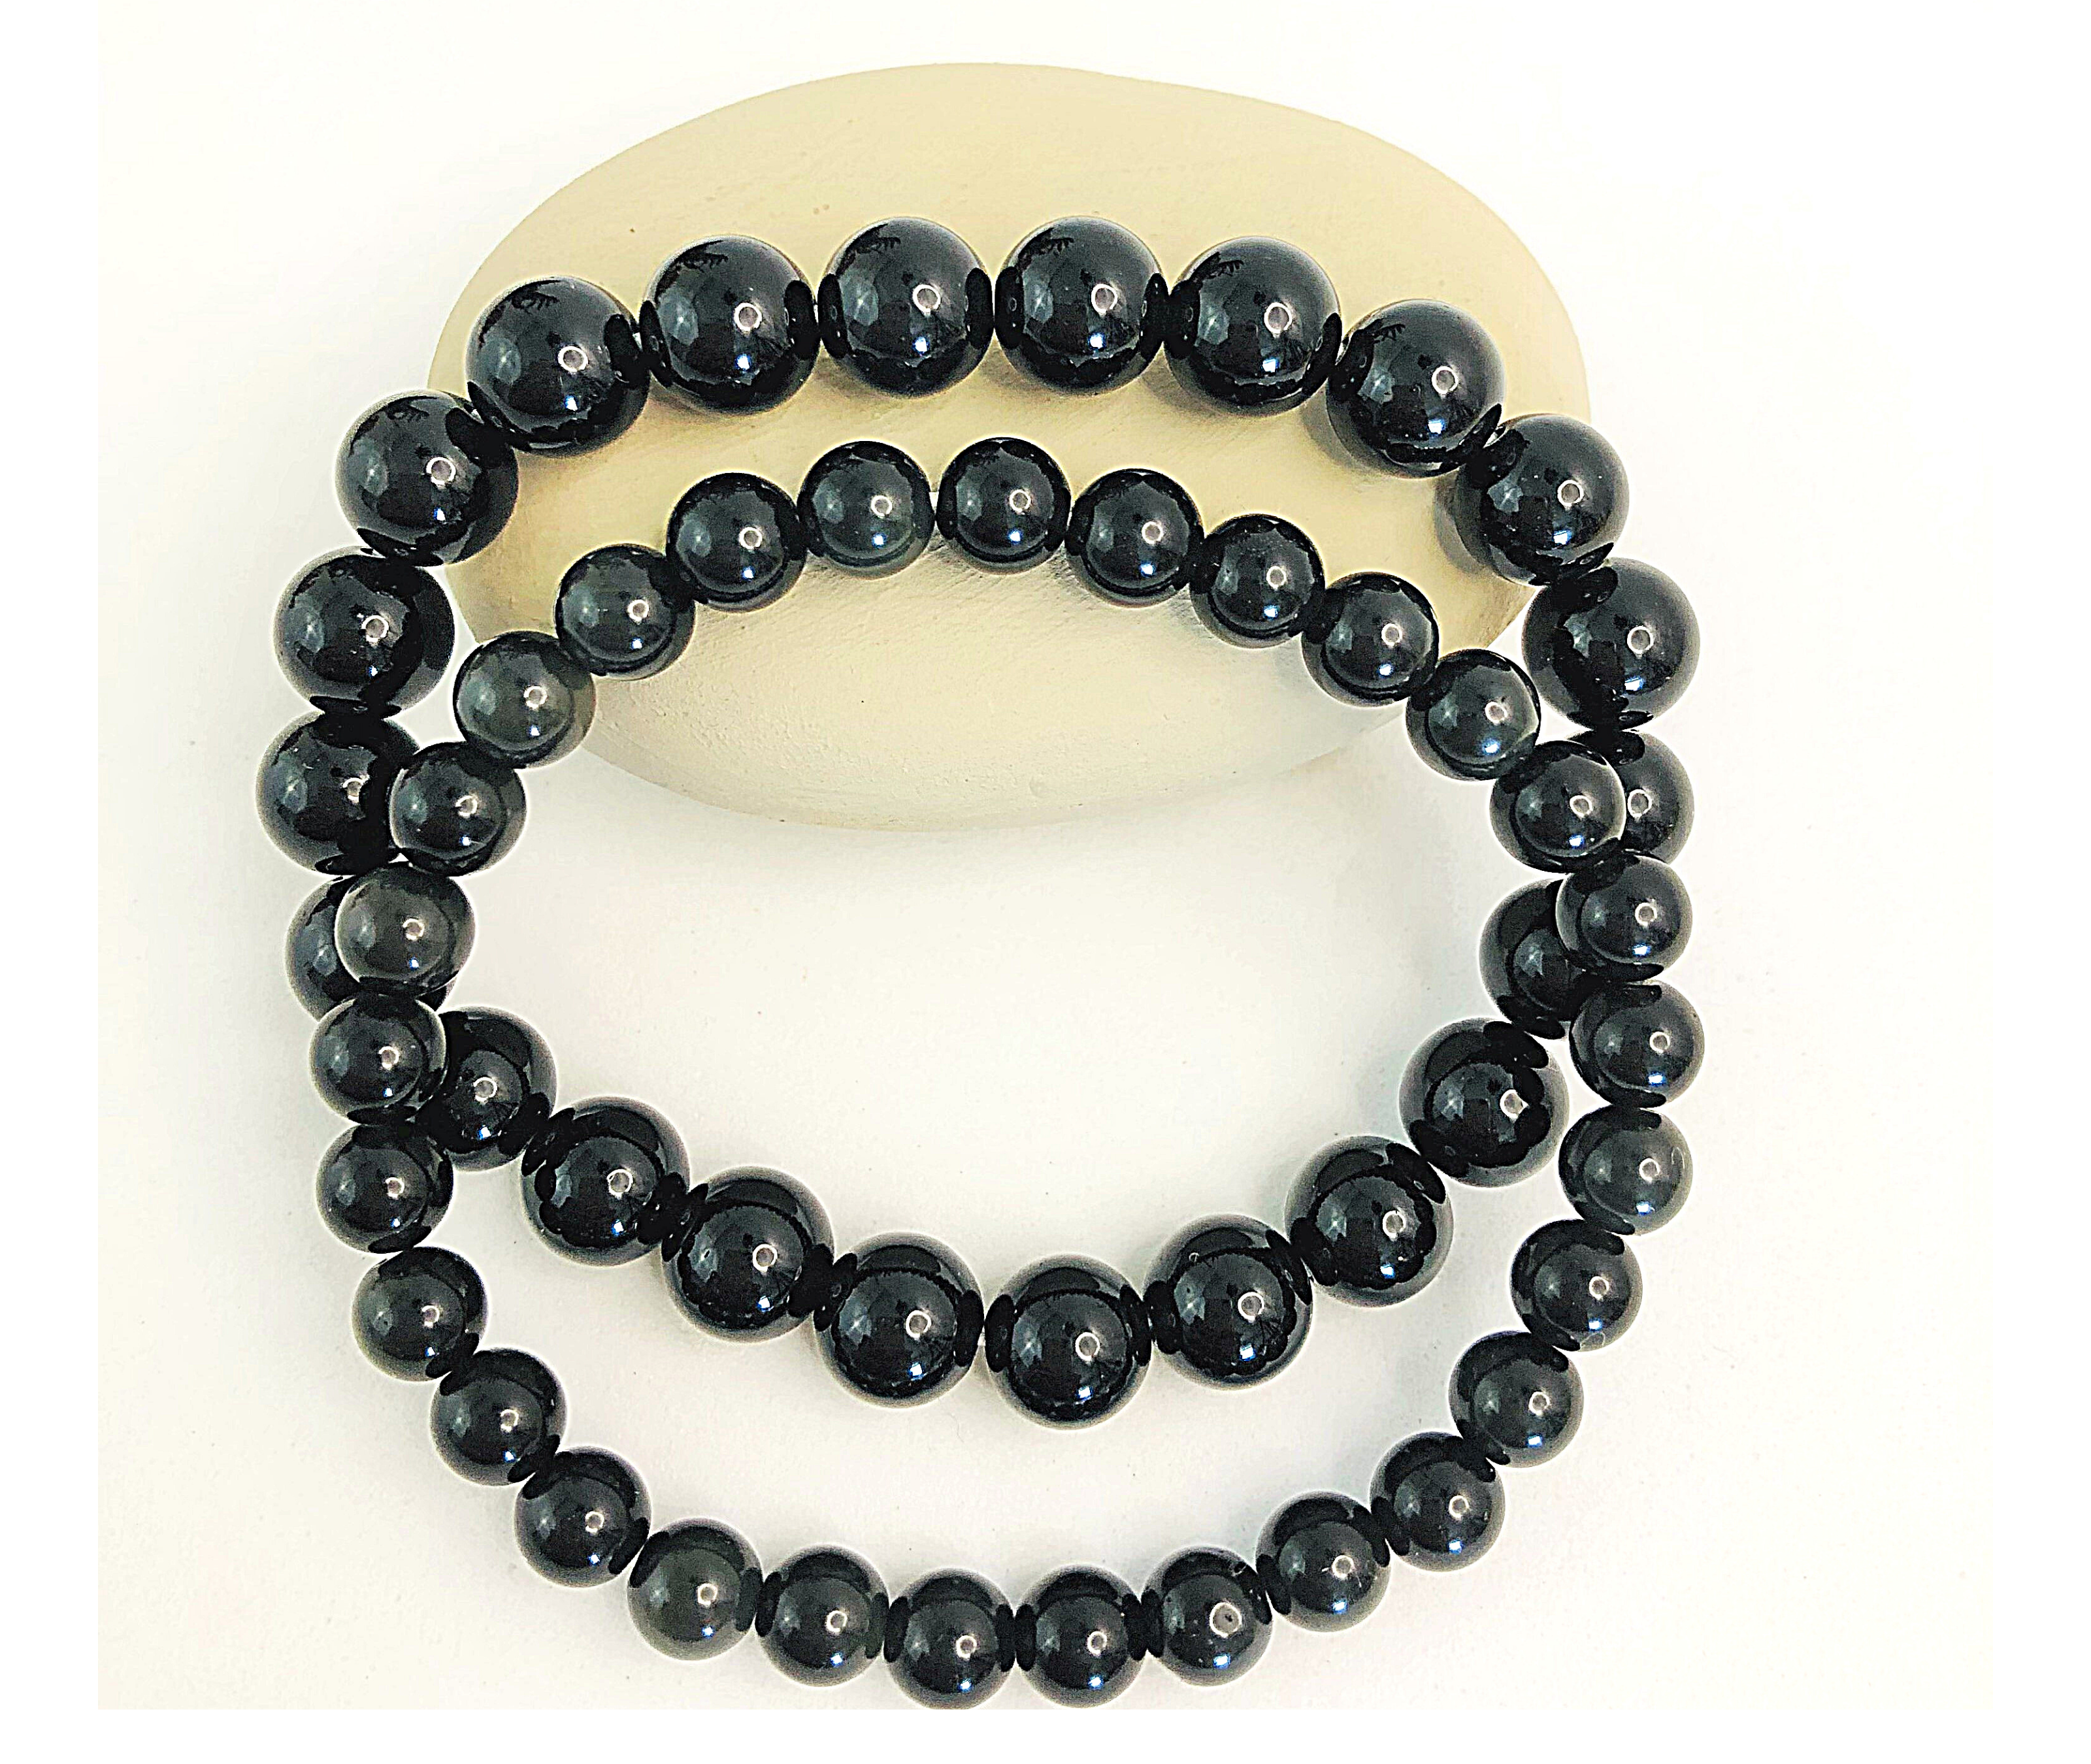  Long tiantian Black Heishi Obsidian Bracelet for Men Shungite  Bracelet Natural Stone Chakra Bracelet for Women Jewelry Clearance Under 5  Dollar Items : Health & Household